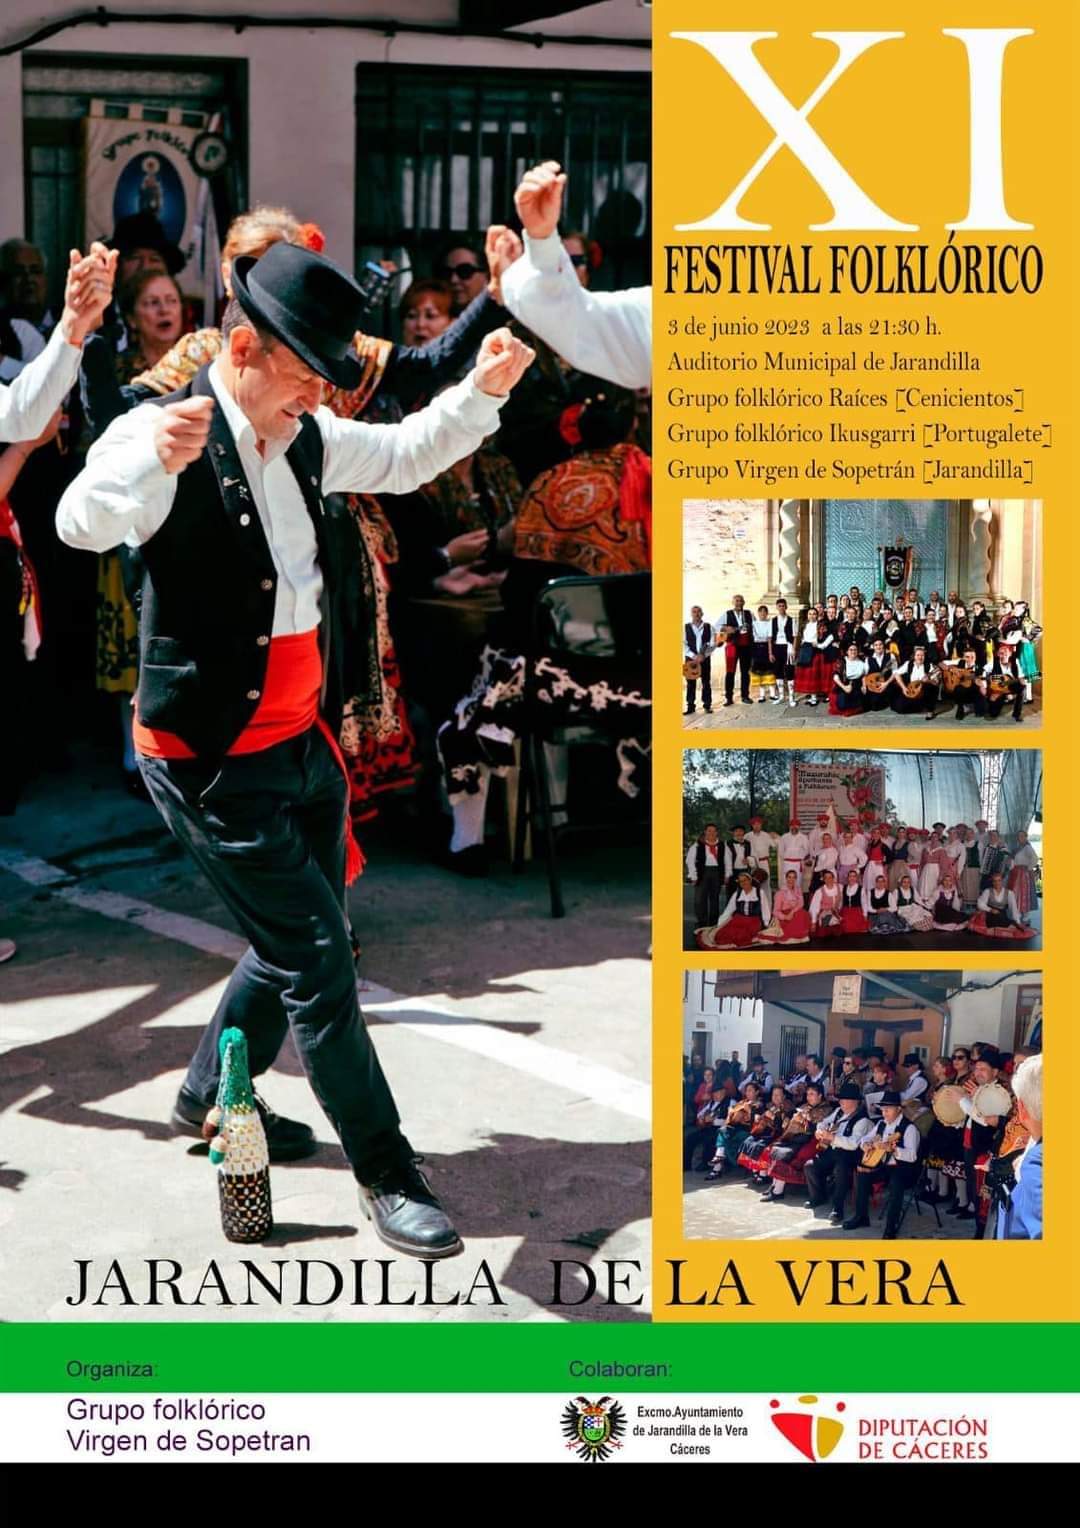 XI Festival Folklórico - Jarandilla de la Vera (Cáceres)